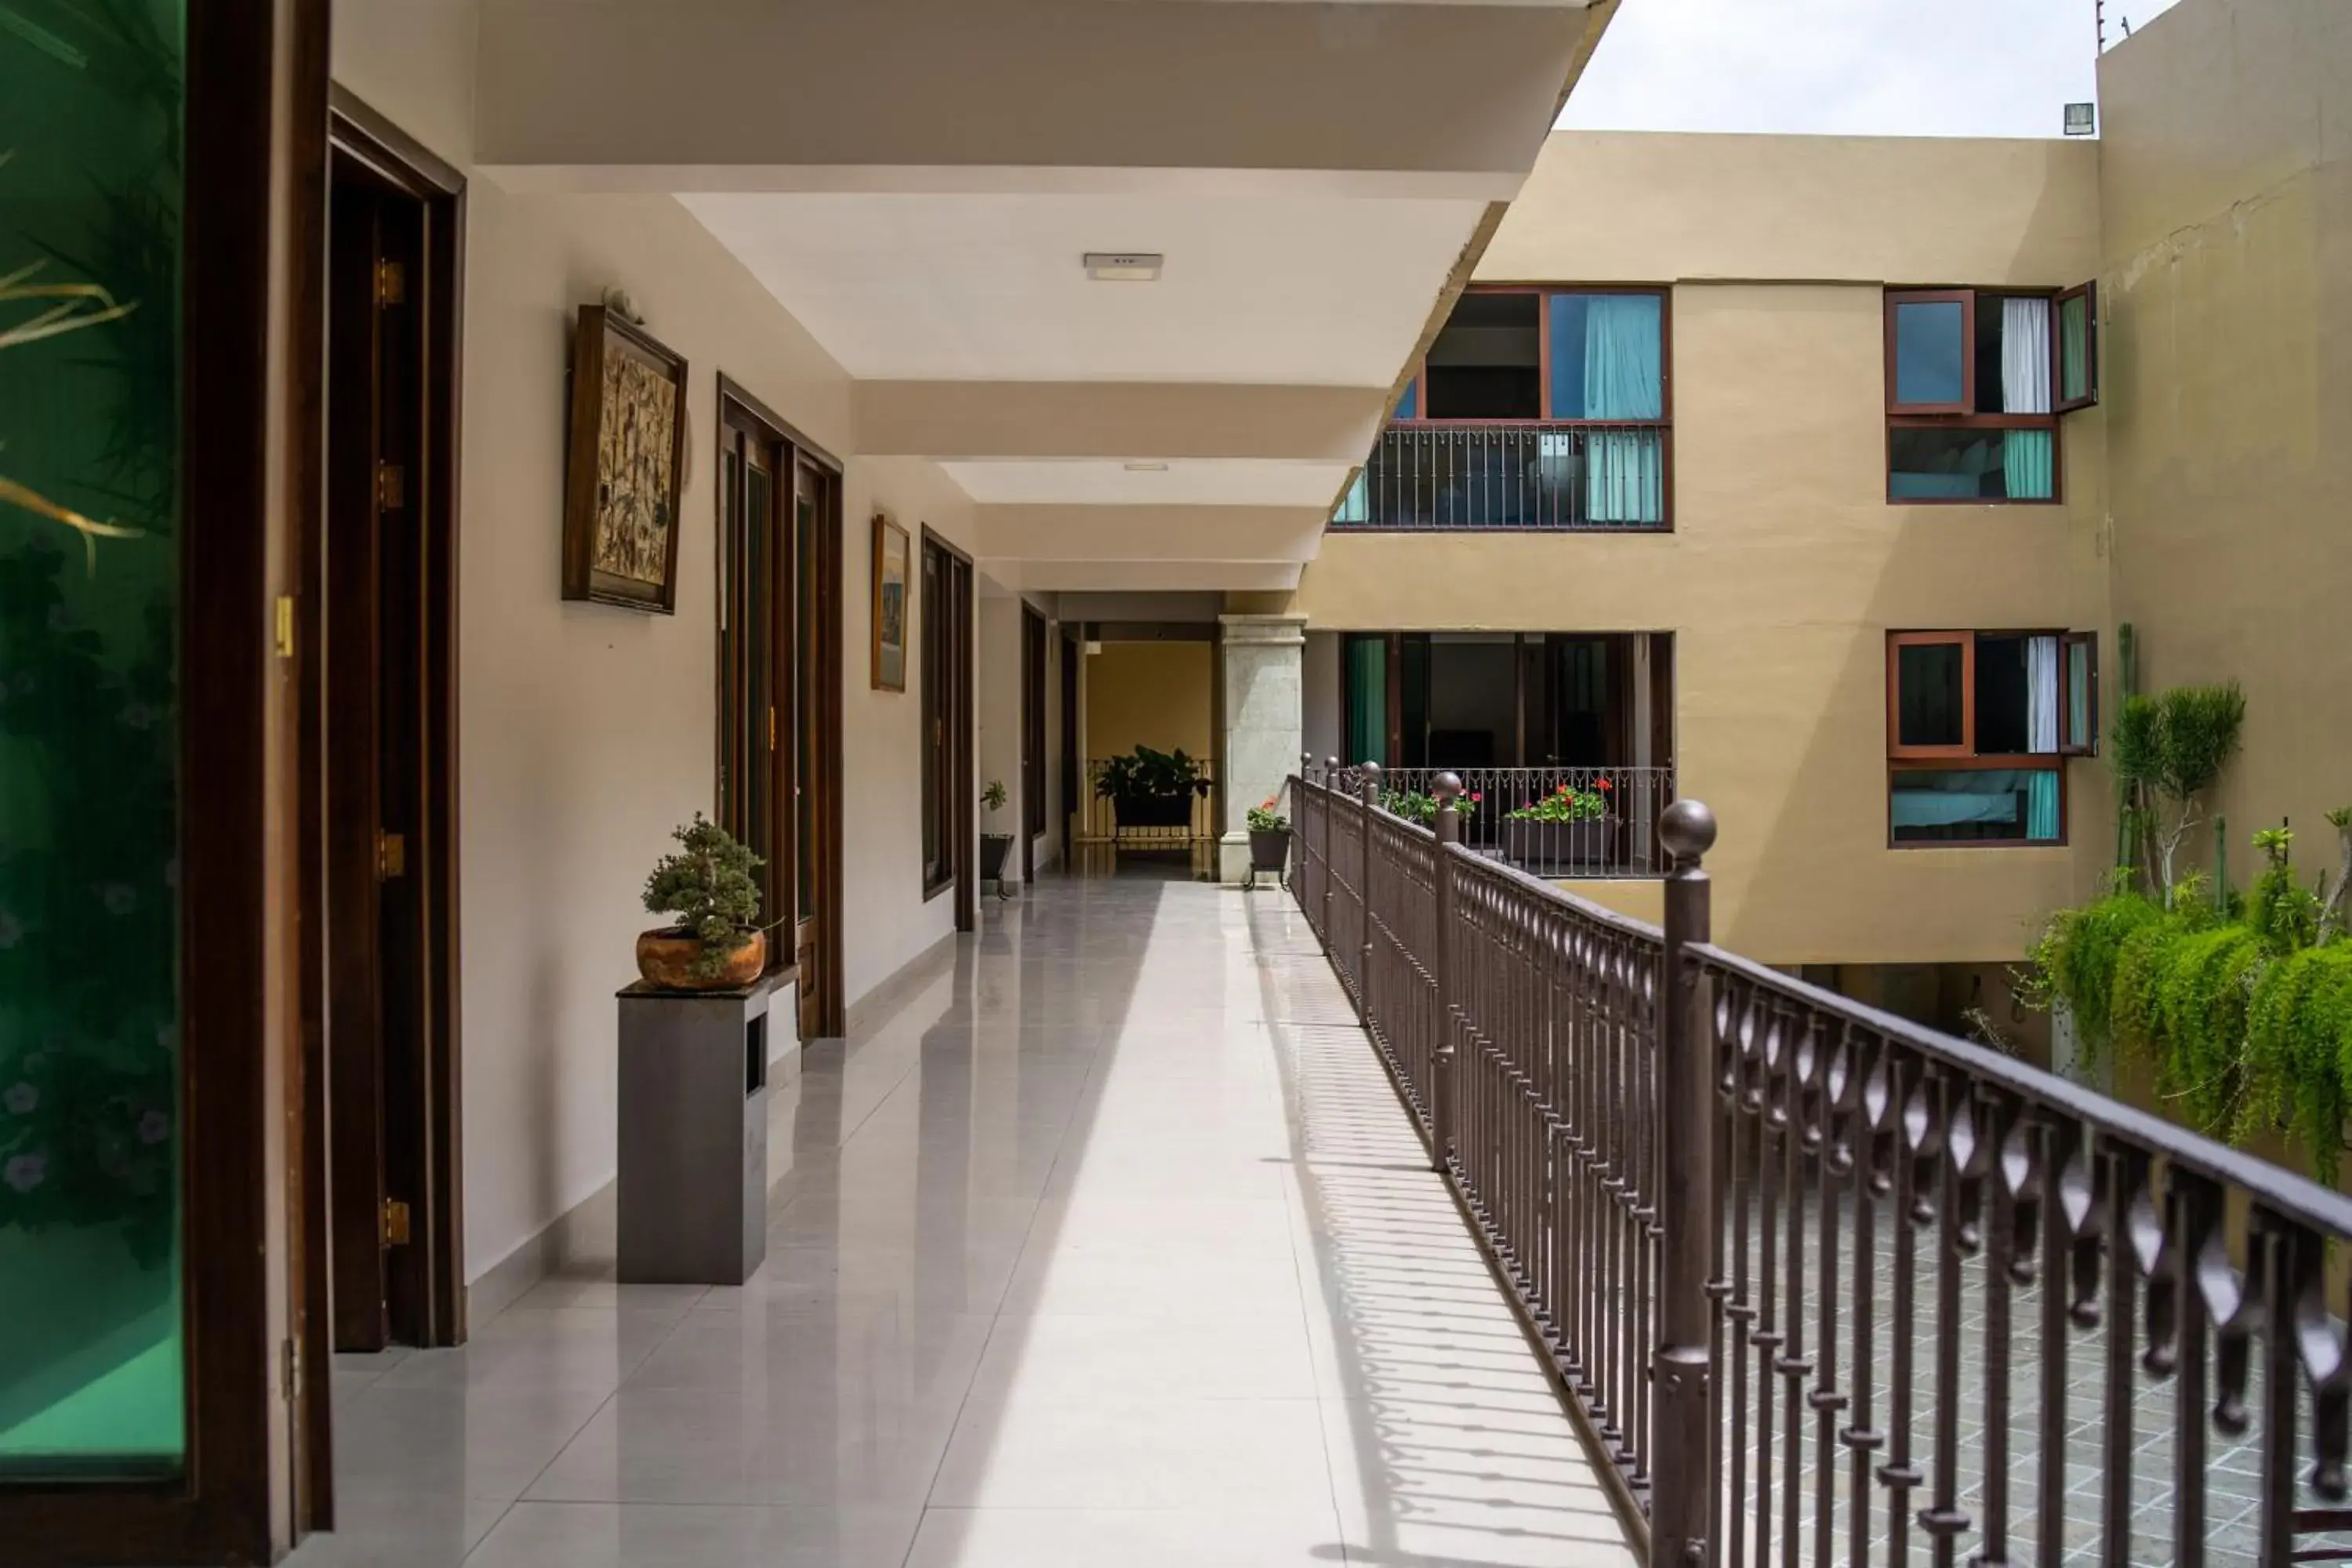 Property building, Balcony/Terrace in Casa de las Flores Hotel